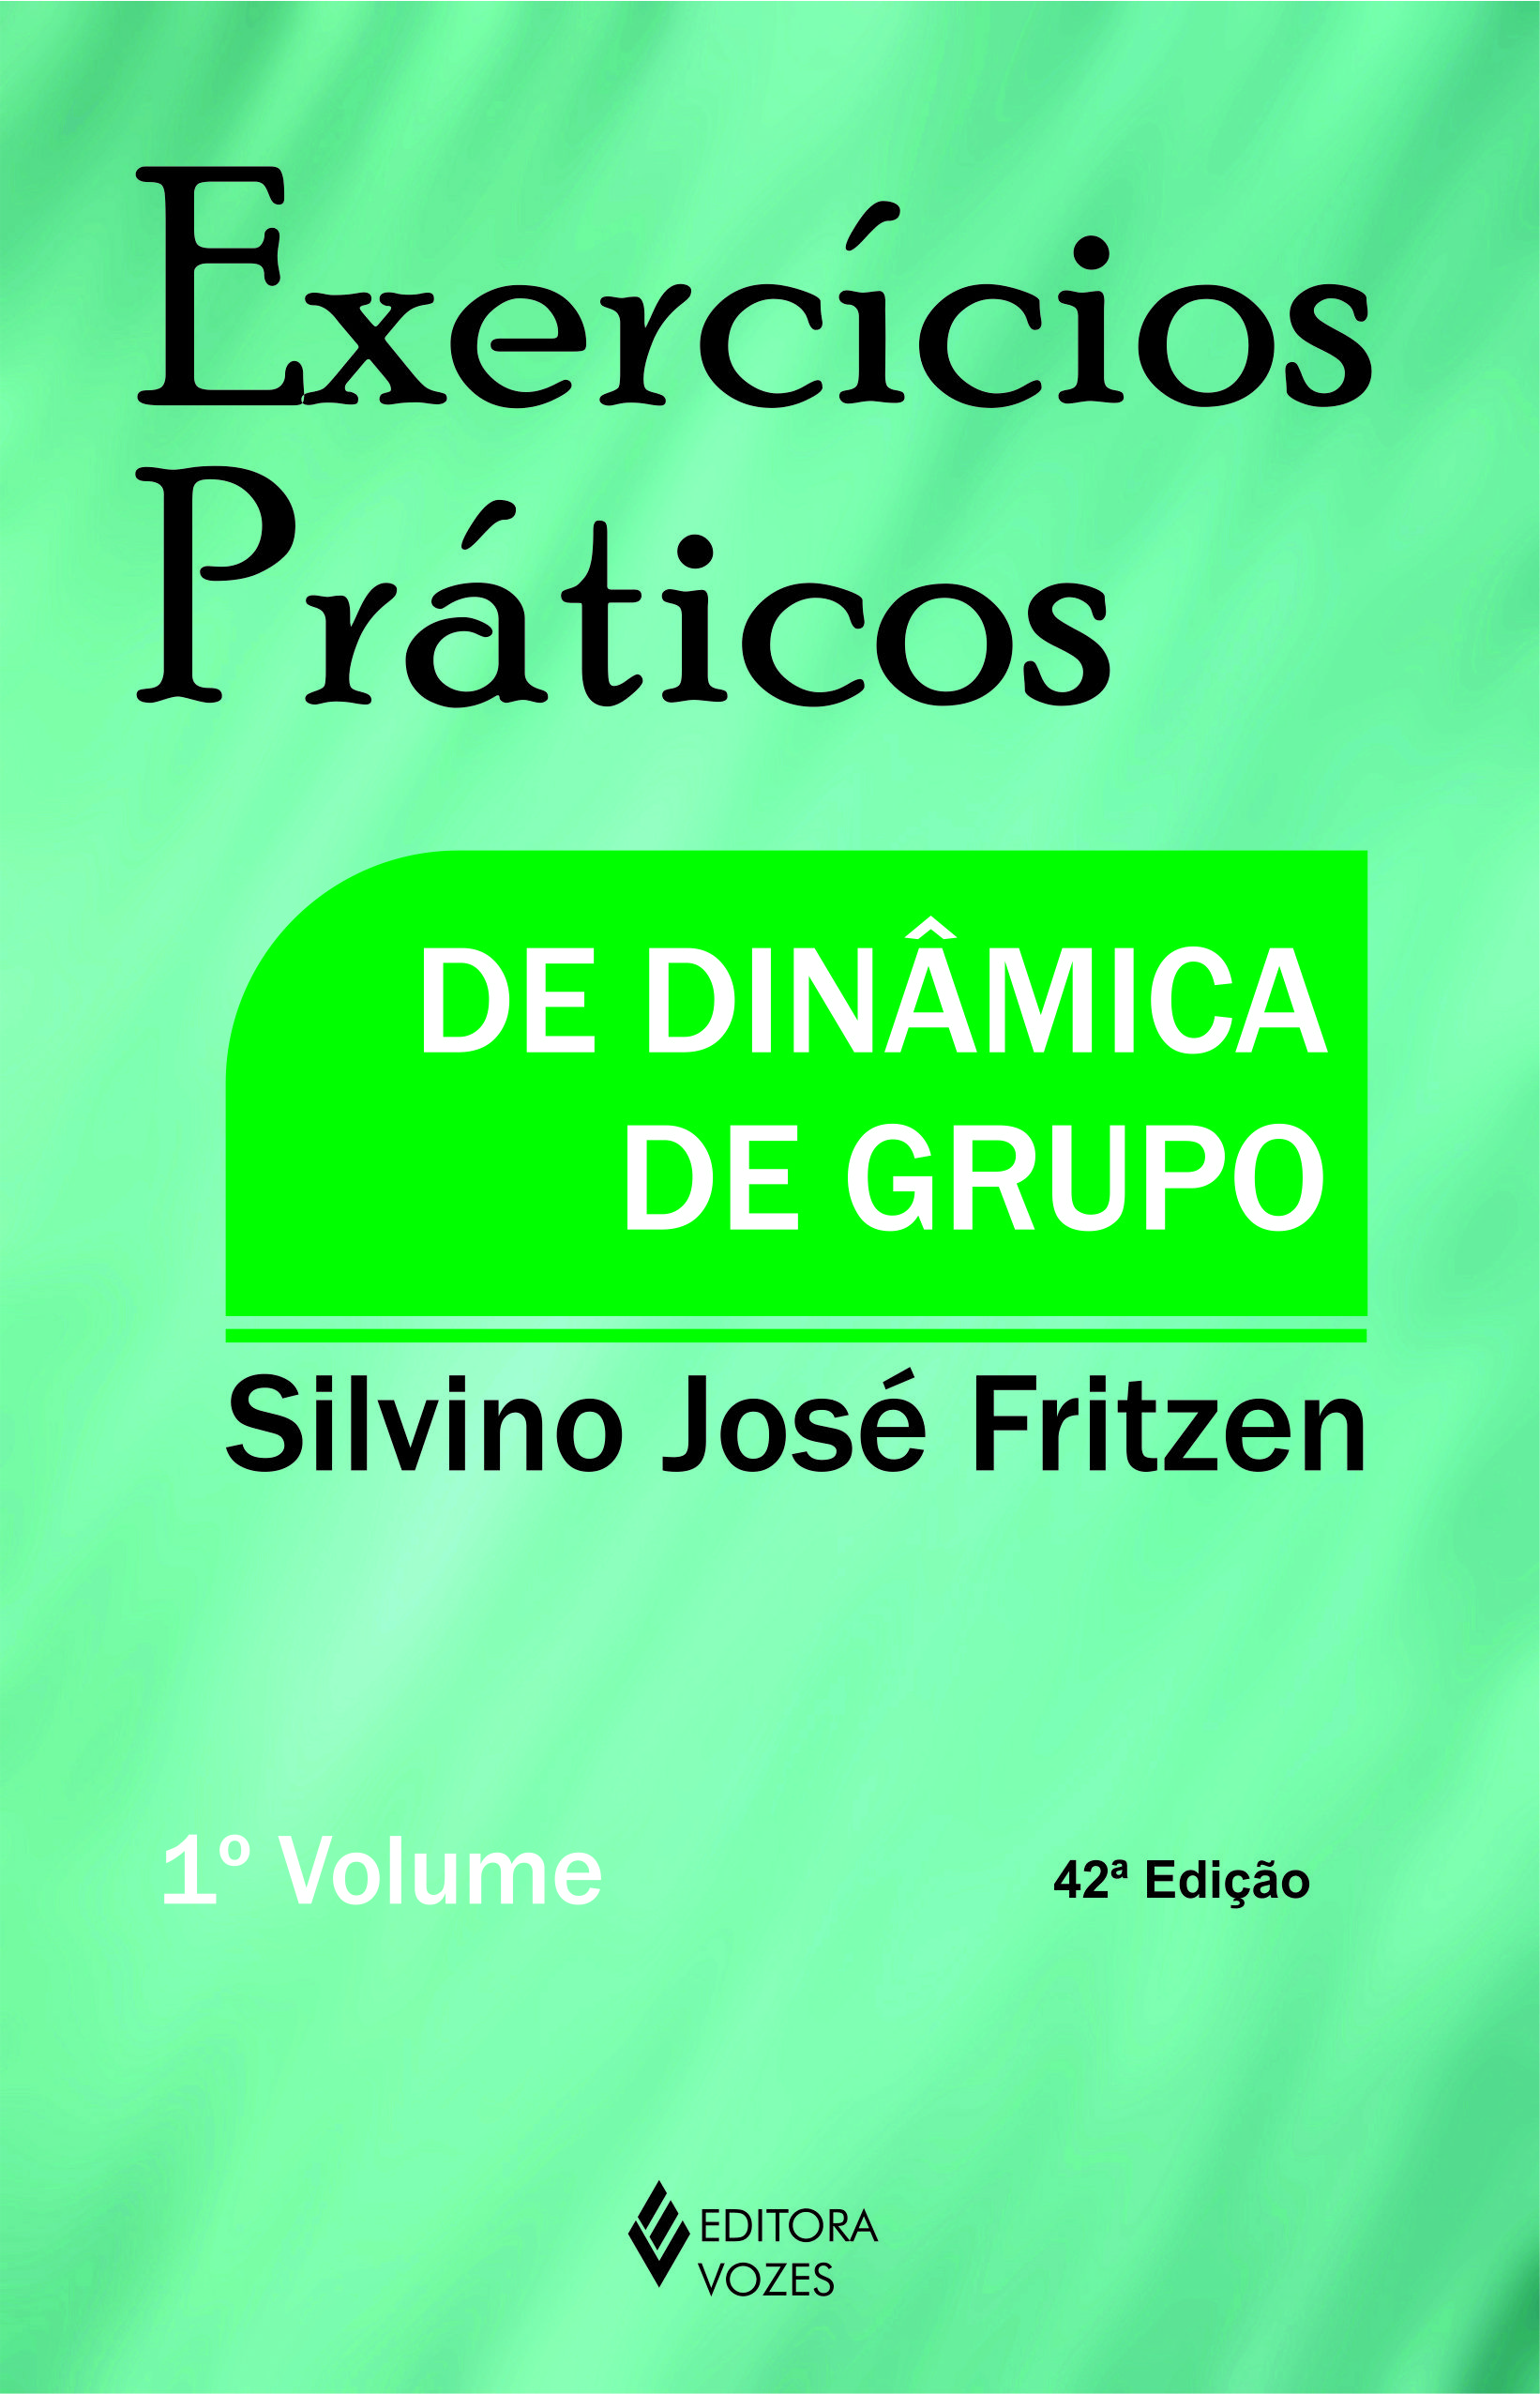 Exercícios Práticos de Dinâmica de Grupo - 42Ed/13